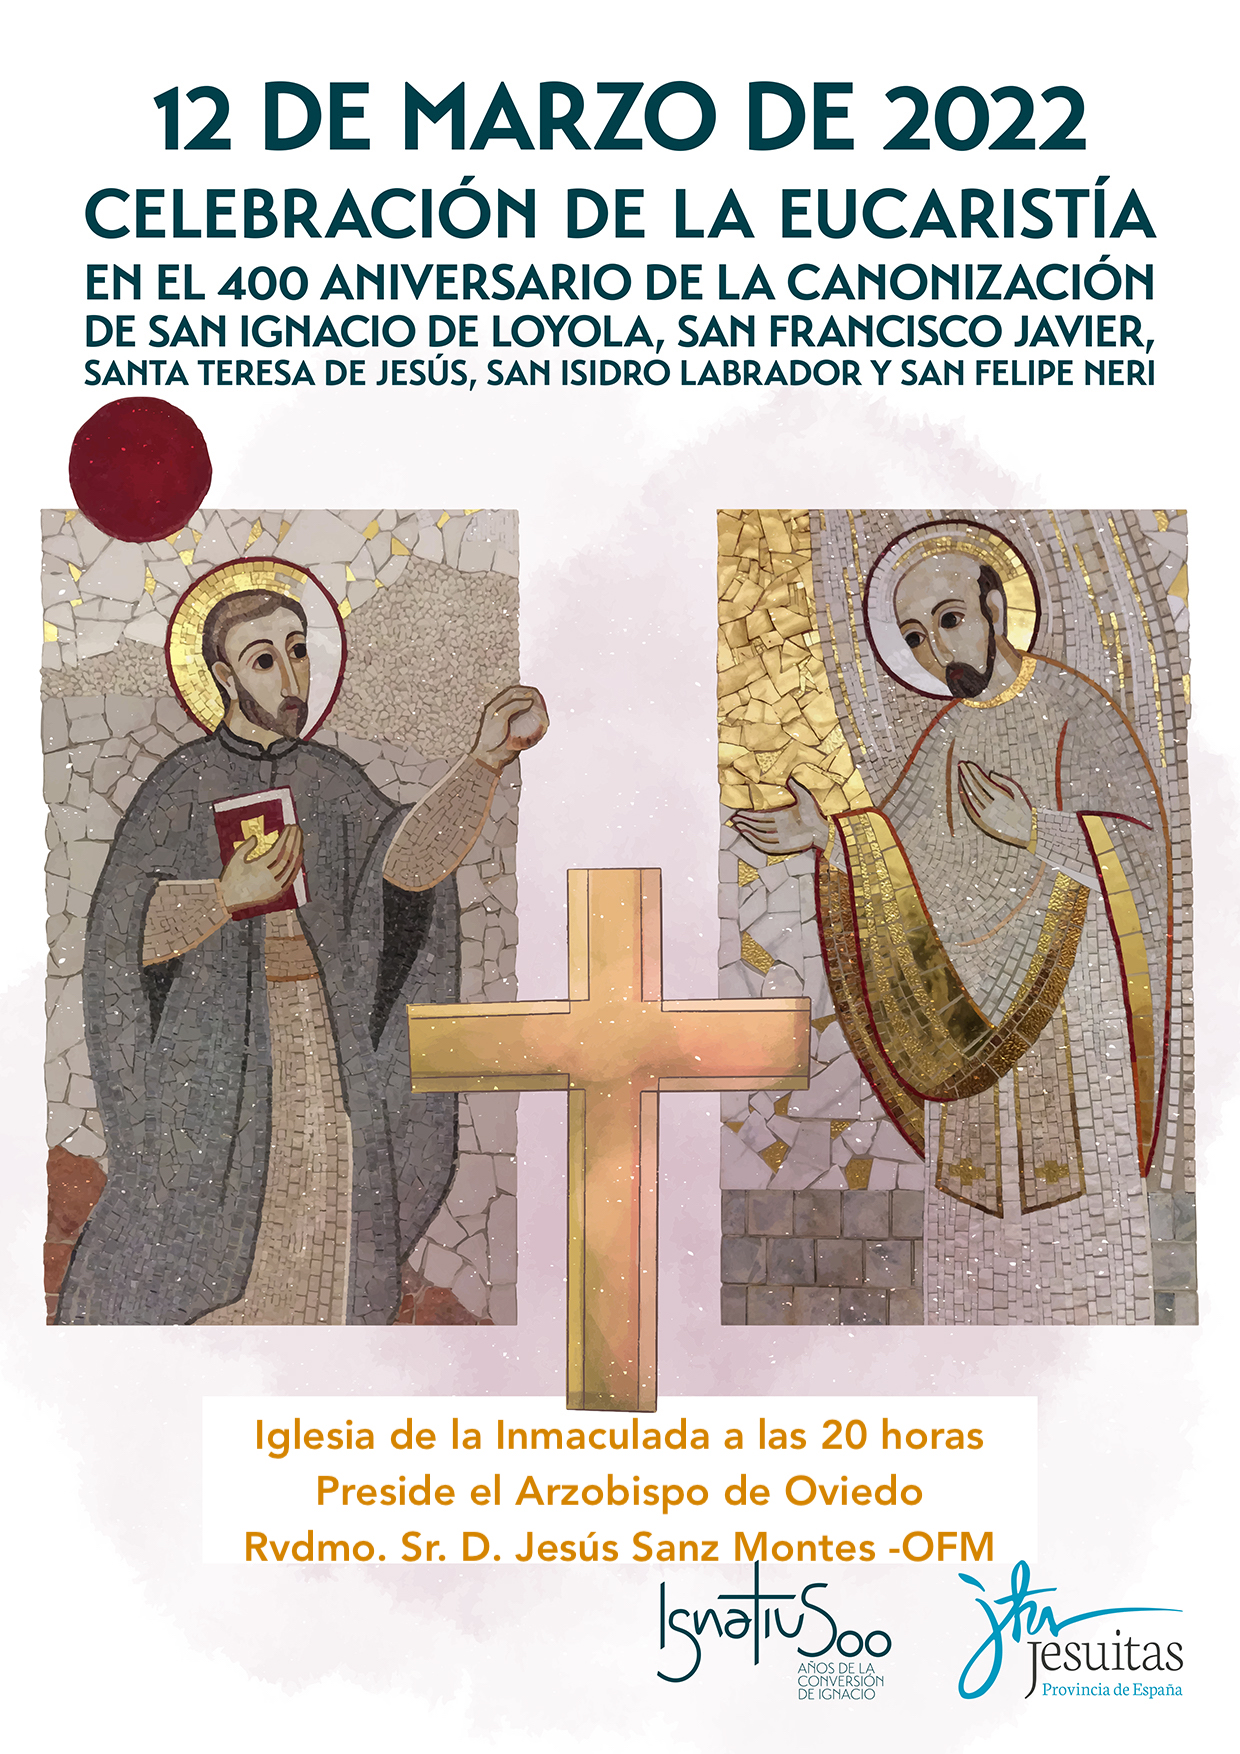 12 de marzo, Eucaristia en el 400 aniversario de la canonización de S Ignacio